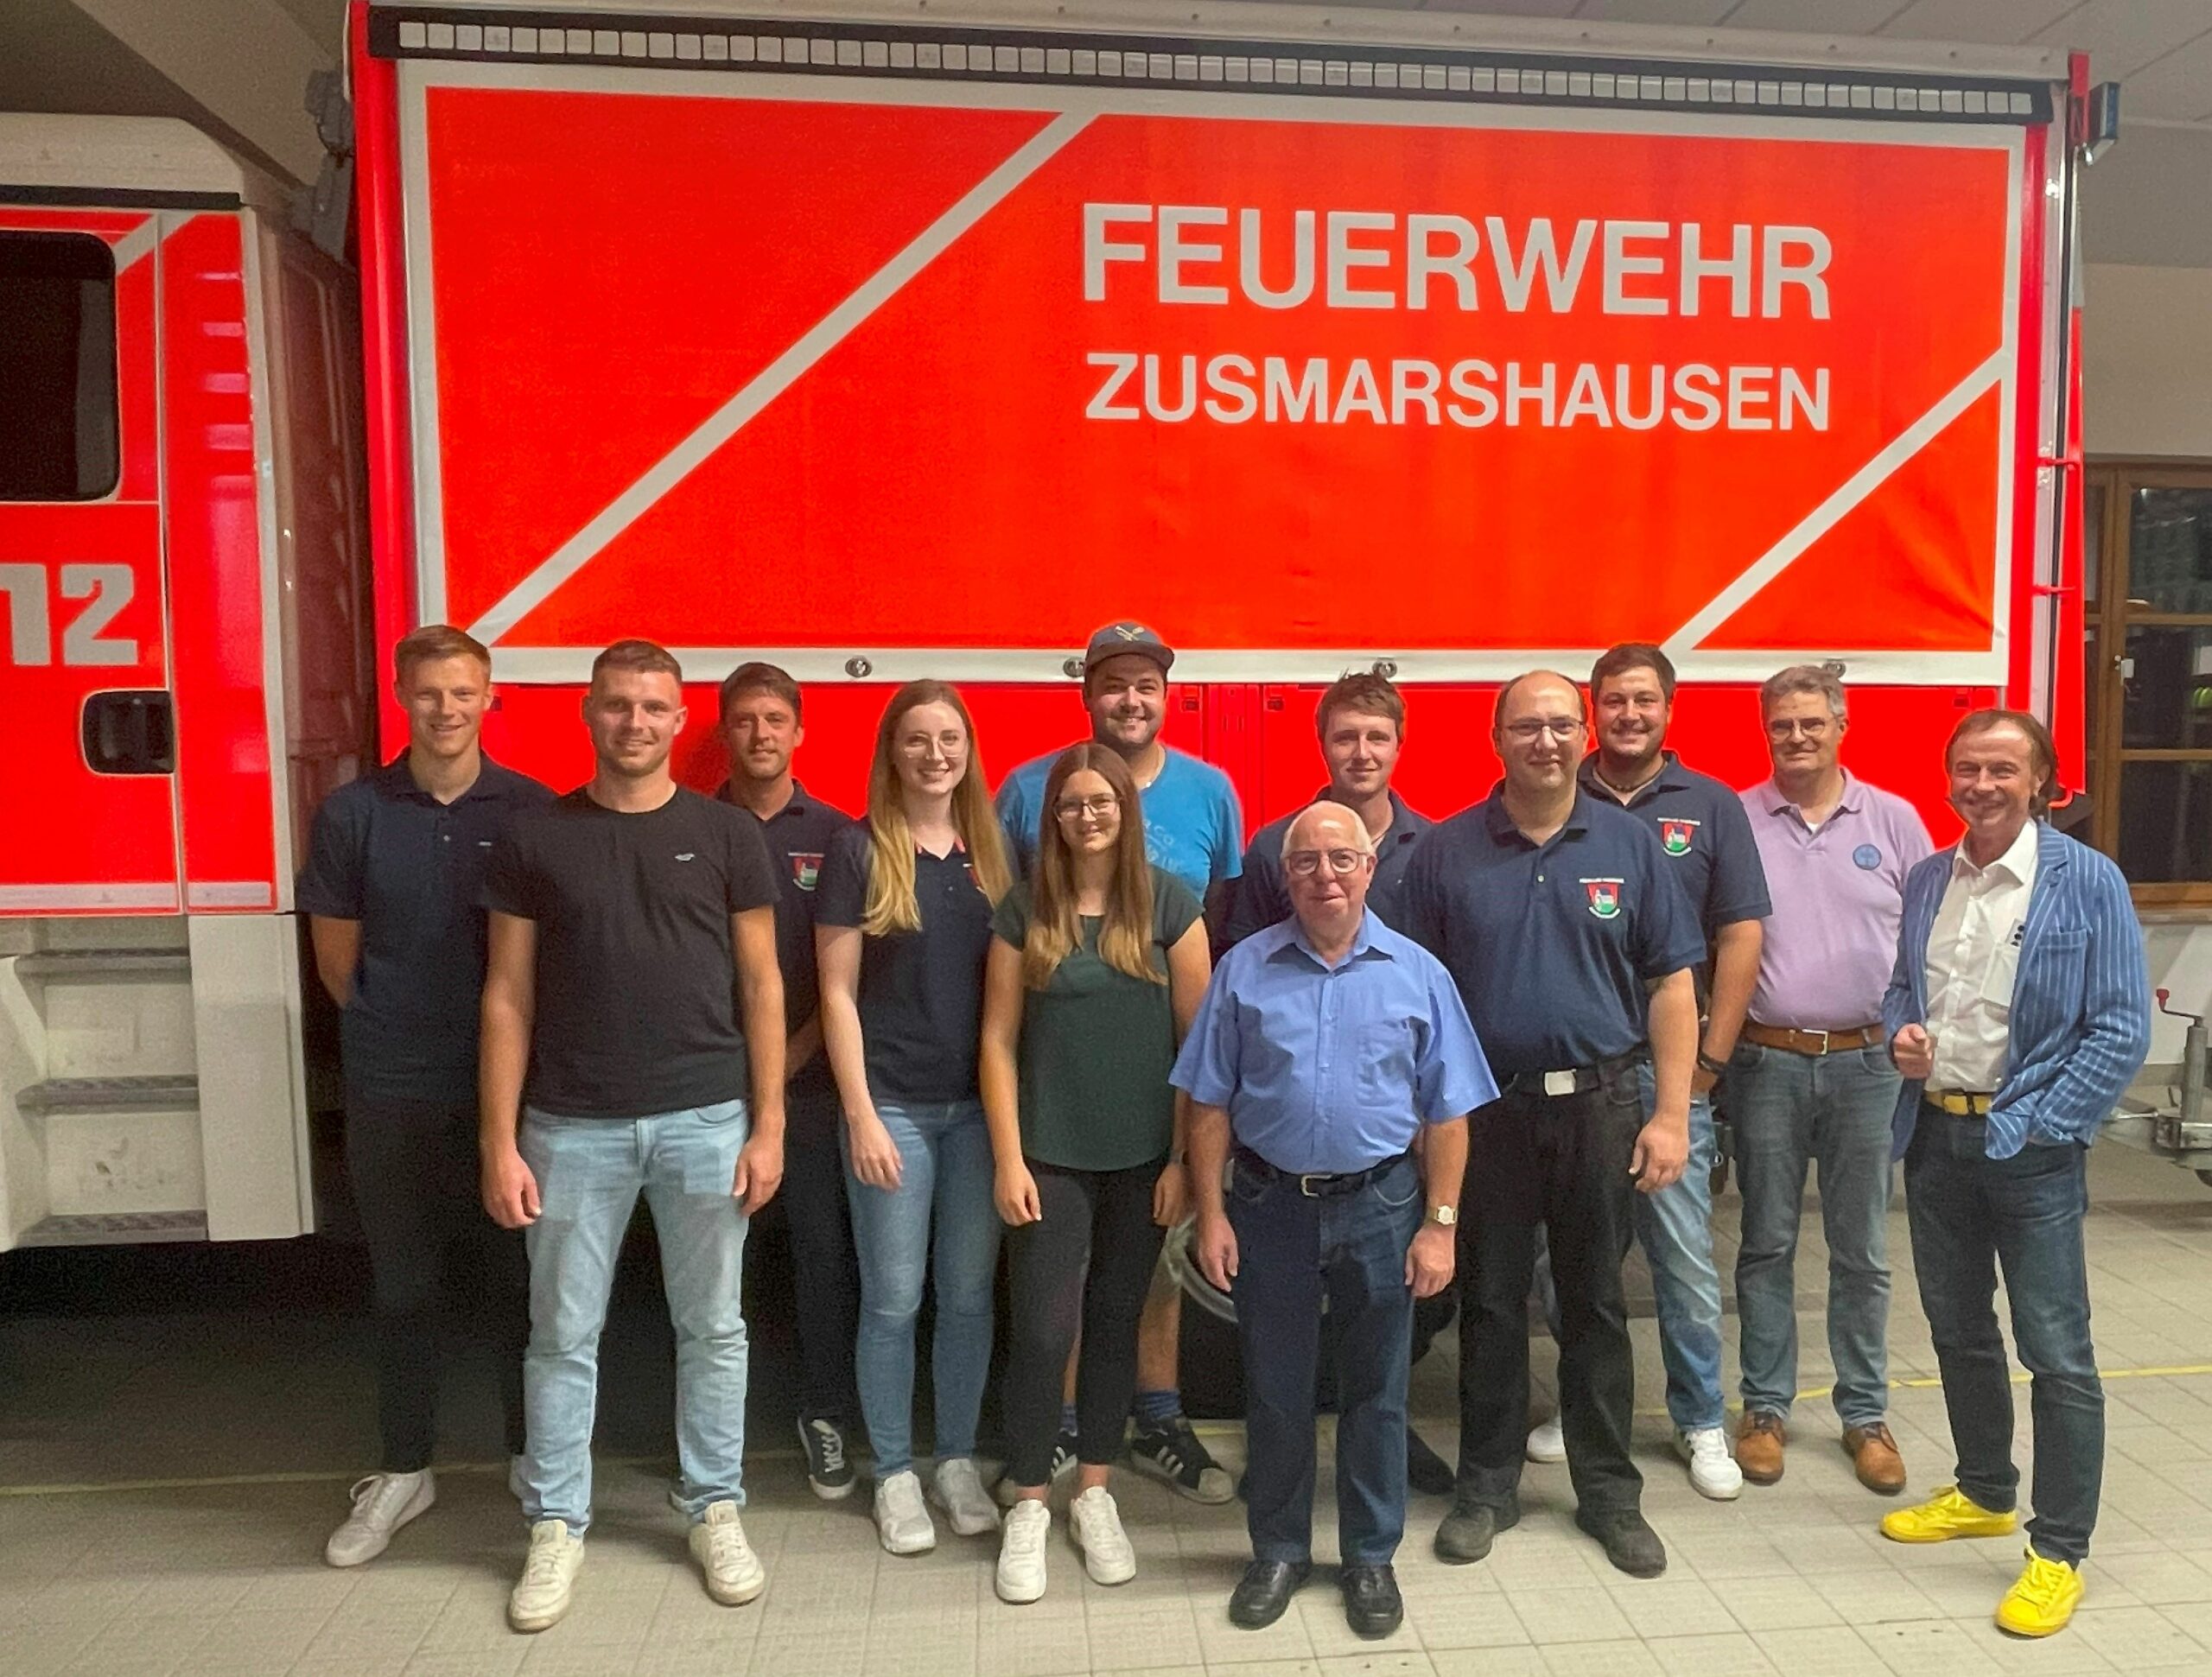 Feuerwehrverein wählt neue Führung